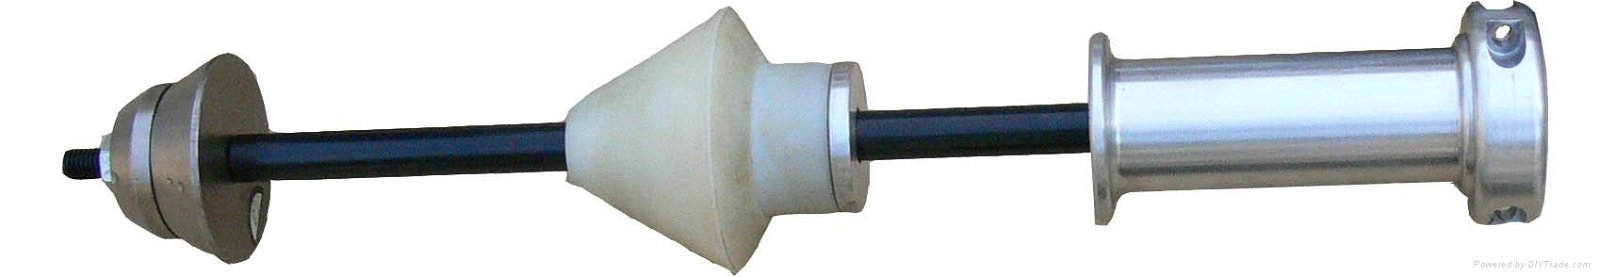 Model M-100 portable valve grinder 3